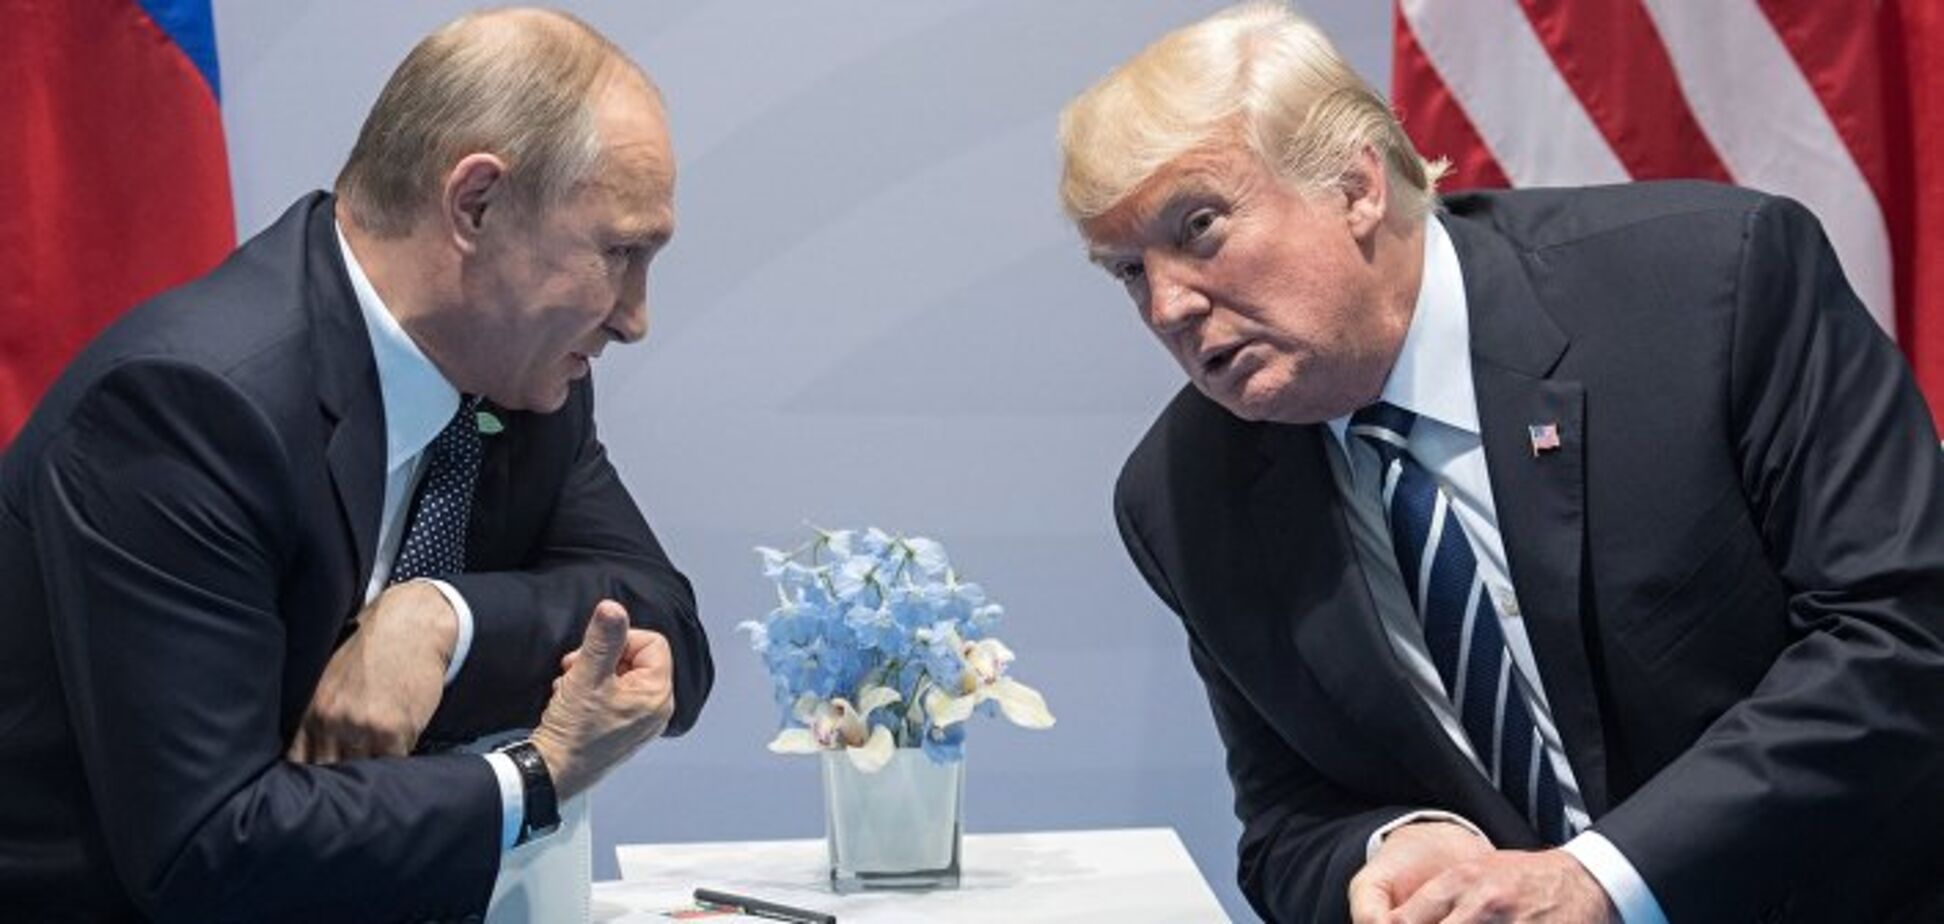 Названа можлива дата зустрічі Трампа і Путіна - ЗМІ